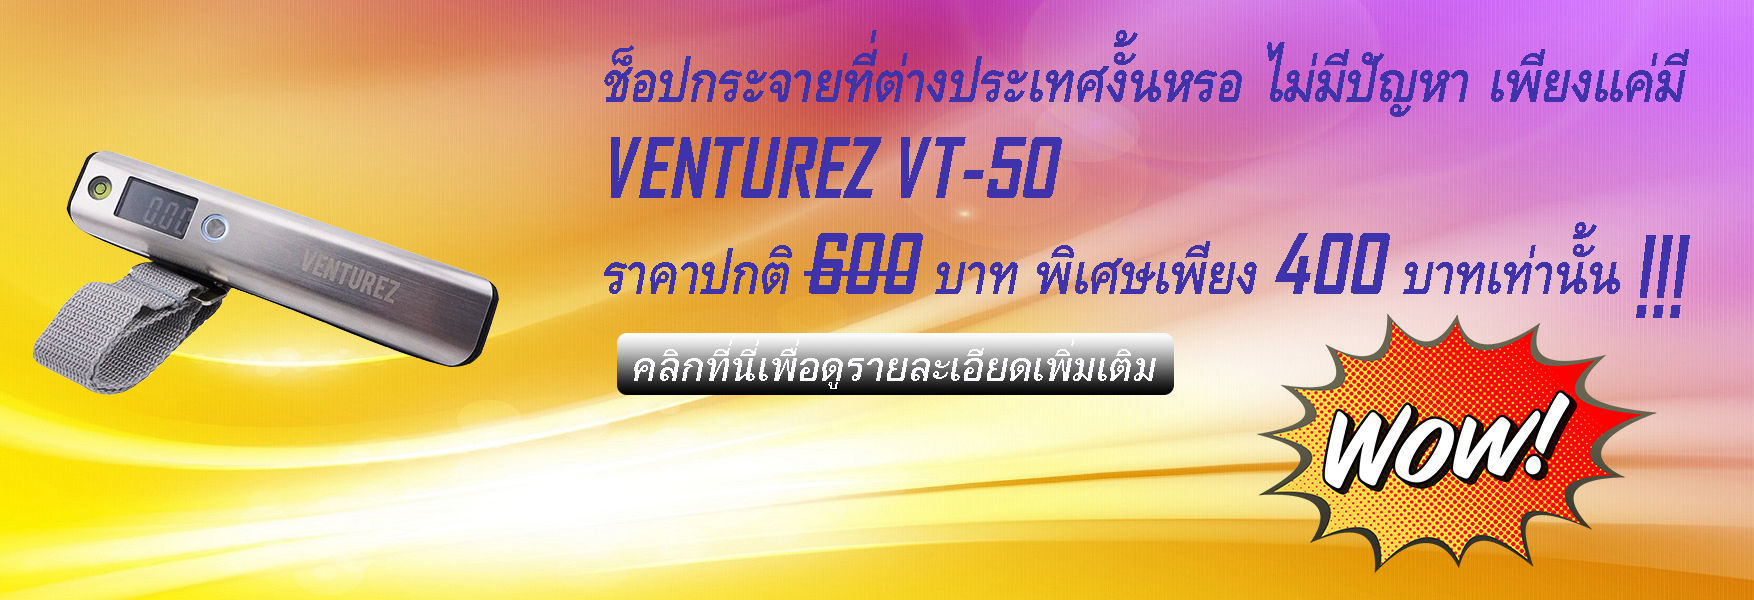 เครื่องชั่งน้ำหนักกระเป๋าเดินทาง ราคาถูก ยี่ห้อ VENTUREZ รุ่น VT-50